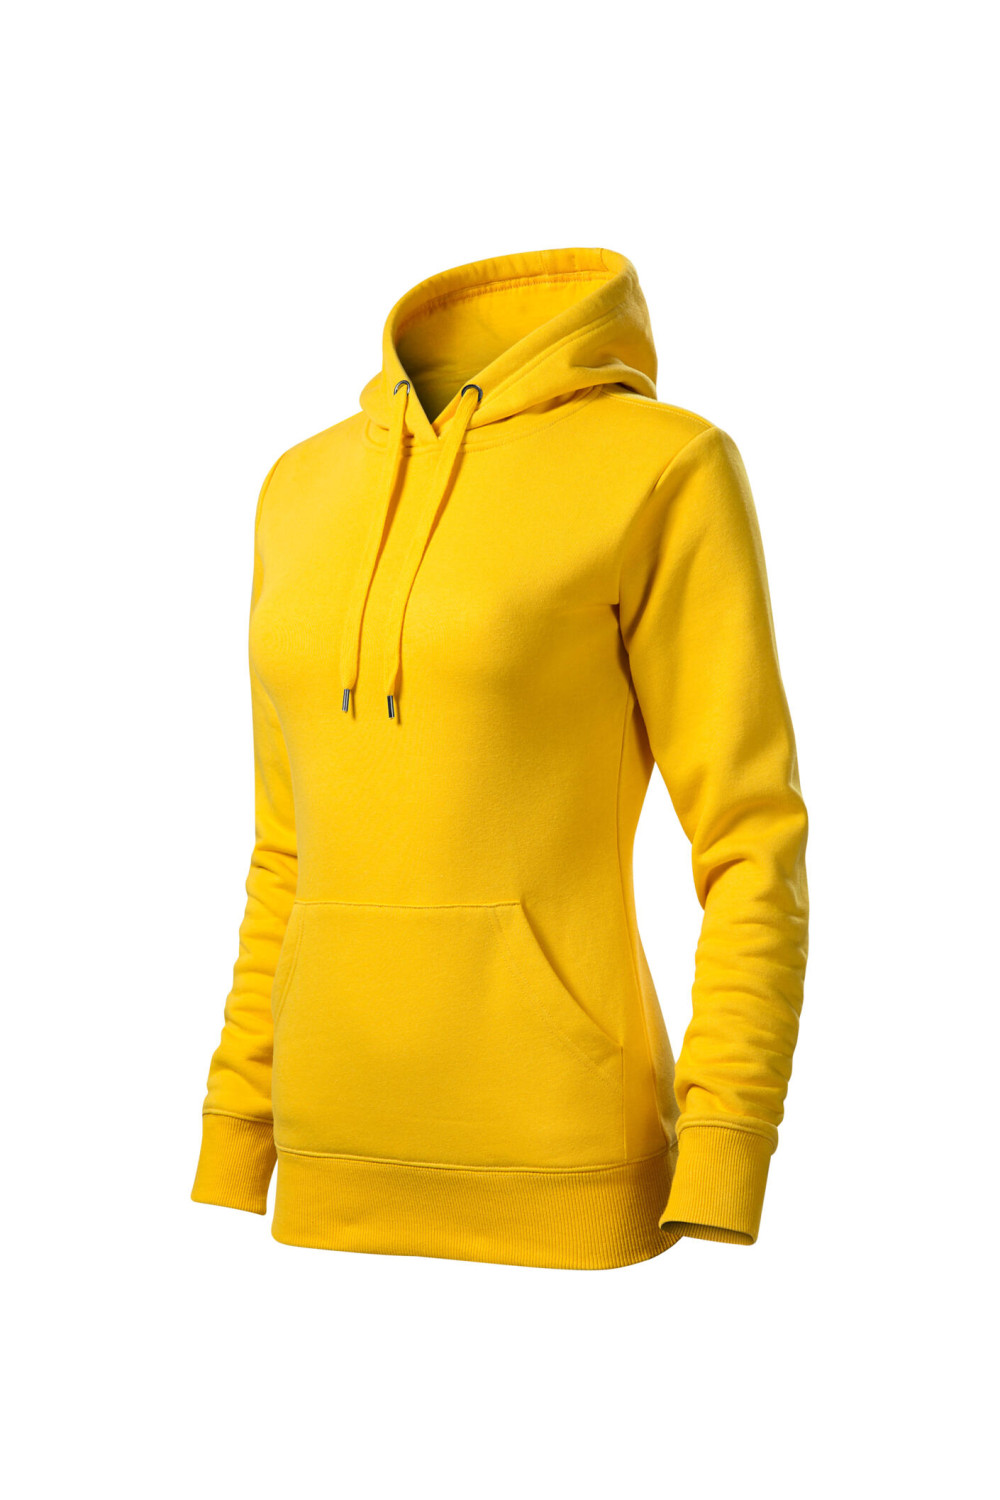 CAPE 414 MALFINI ADLER Bluza sportowa damska z kapturem, bluza kangurka żółty